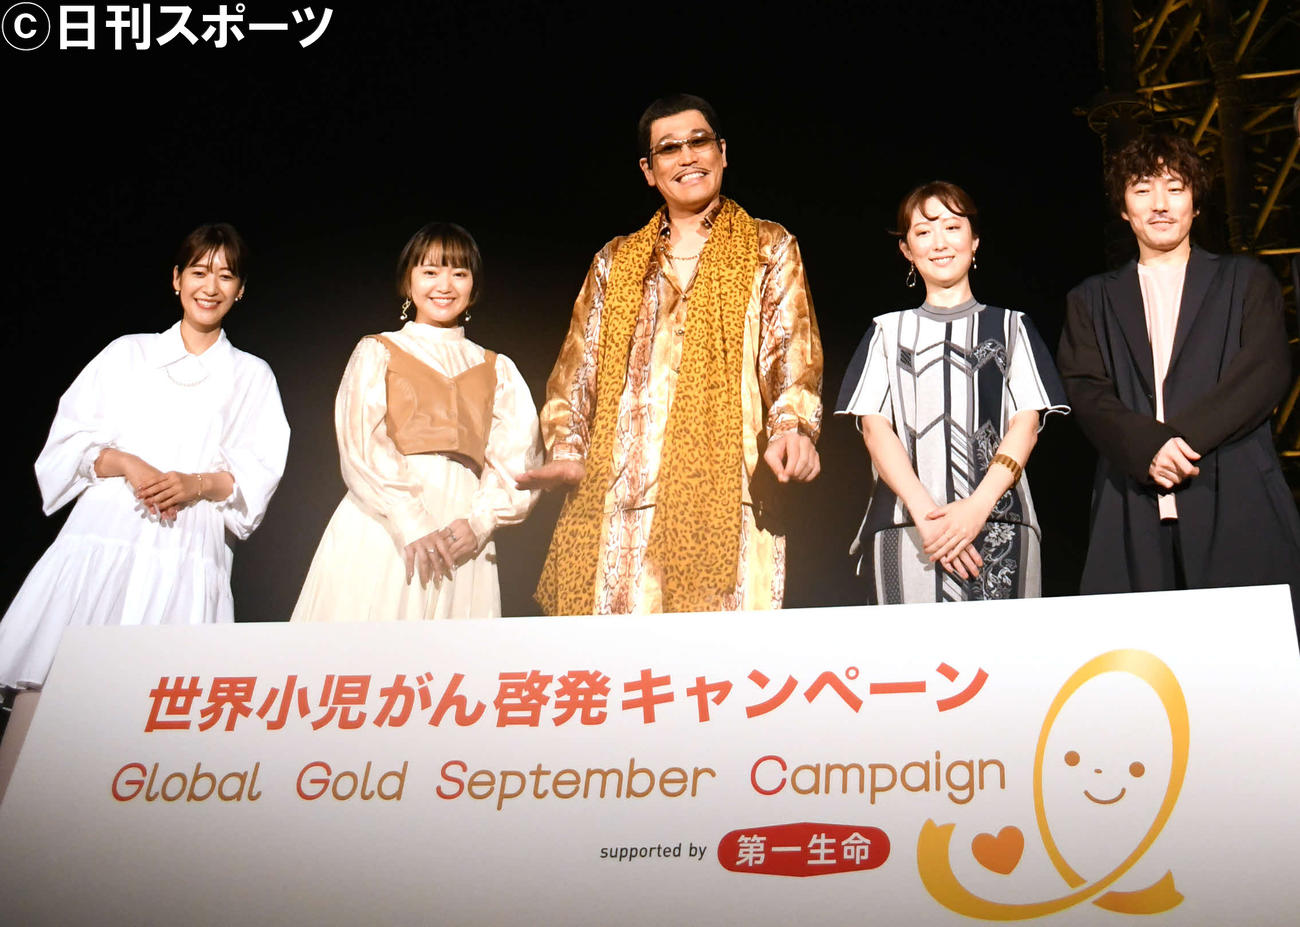 「世界小児がん啓発キャンペーン」スペシャルイベントに出席した、左から吉田明世、矢方美紀、ピコ太郎、moumoonのYUKA、MASAKI（撮影・大友陽平）